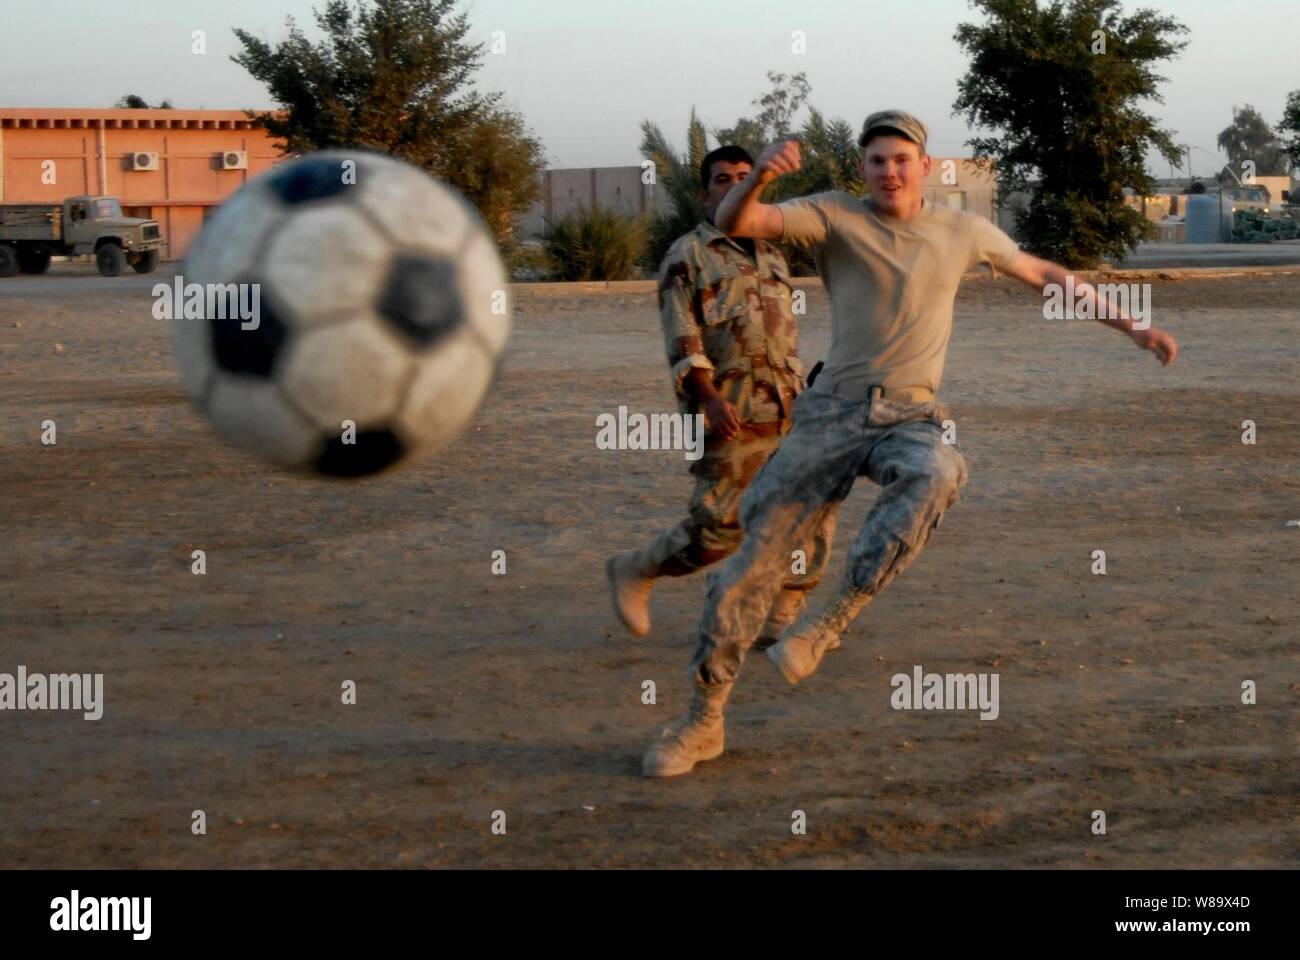 Circuit de l'armée américaine. Casey de la Wailes 1er Escadron, 10e Régiment de cavalerie, 2e Brigade Combat Team, 4e Division d'infanterie, efface la balle pendant un match de football avec des soldats iraquiens à Mahawil, l'Iraq, le 14 décembre 2008. Banque D'Images